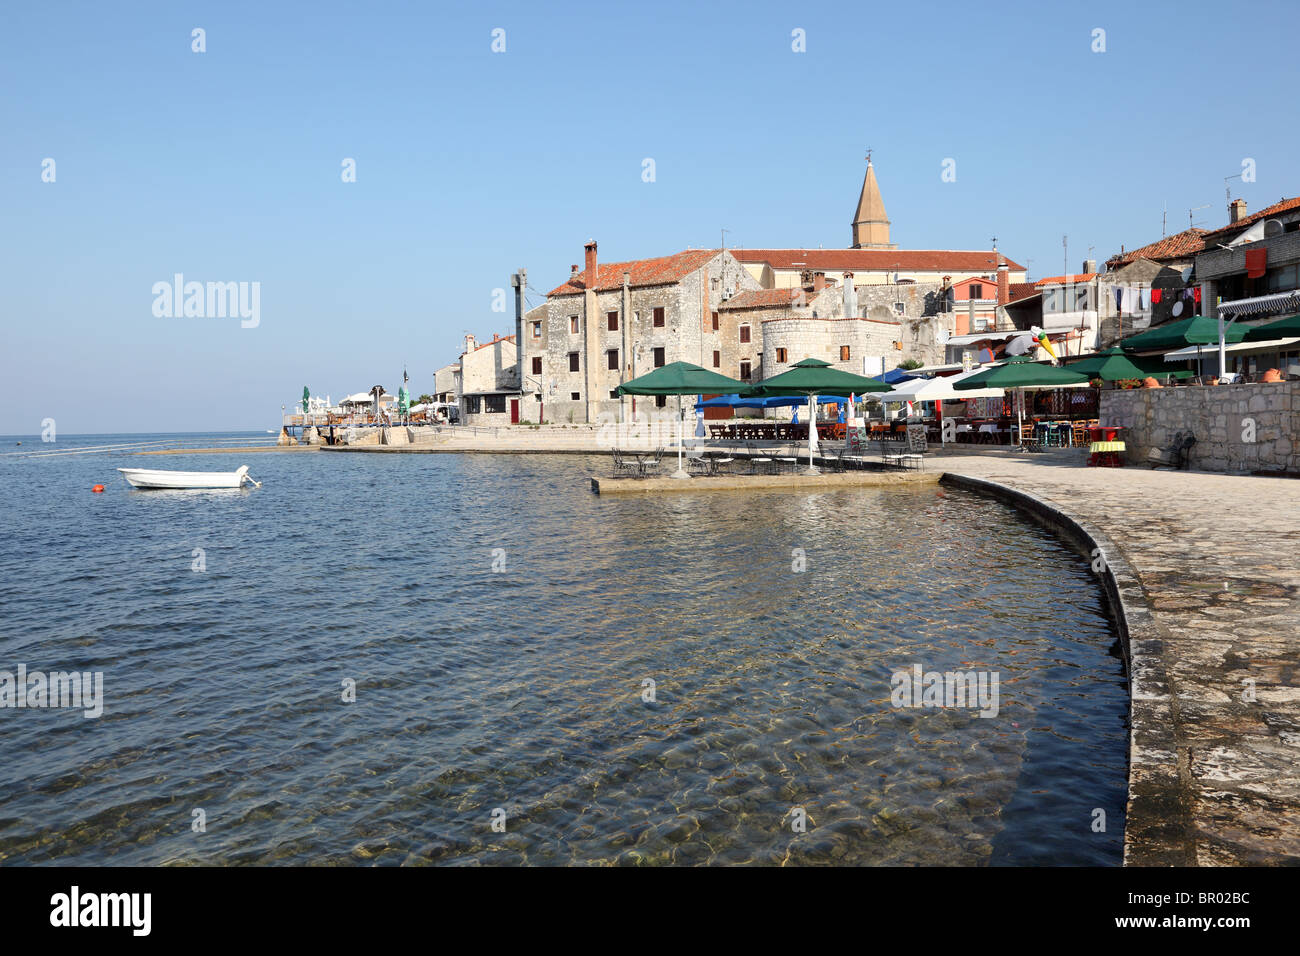 Promenade in Croatian town Umag at the Adriatic Sea Stock Photo